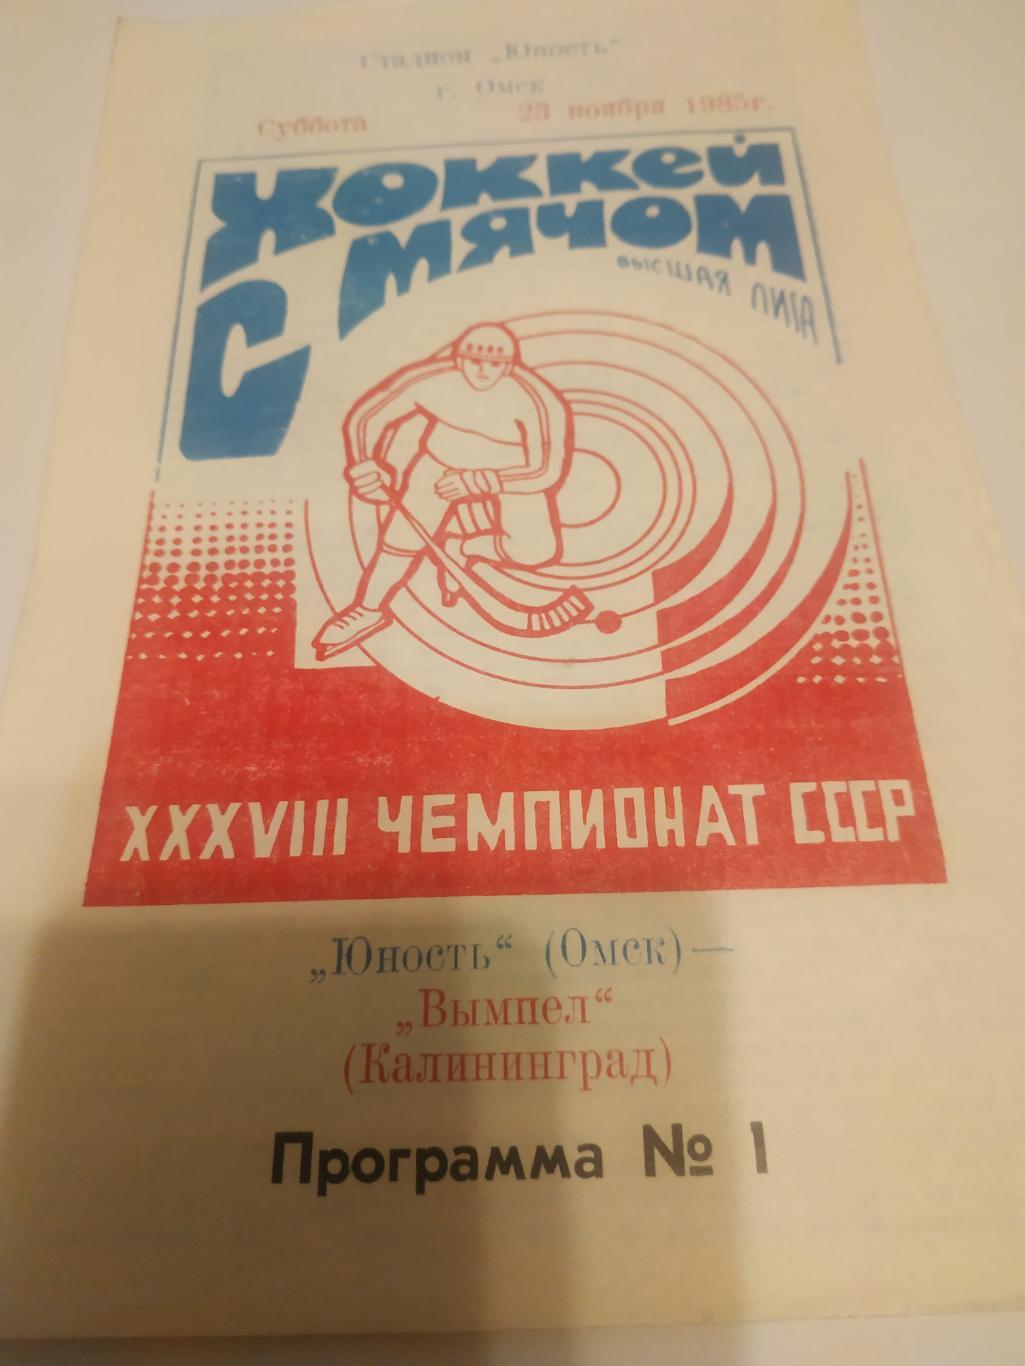 Юность (Омск) - Вымпел (Калининград) 23.11.1985.